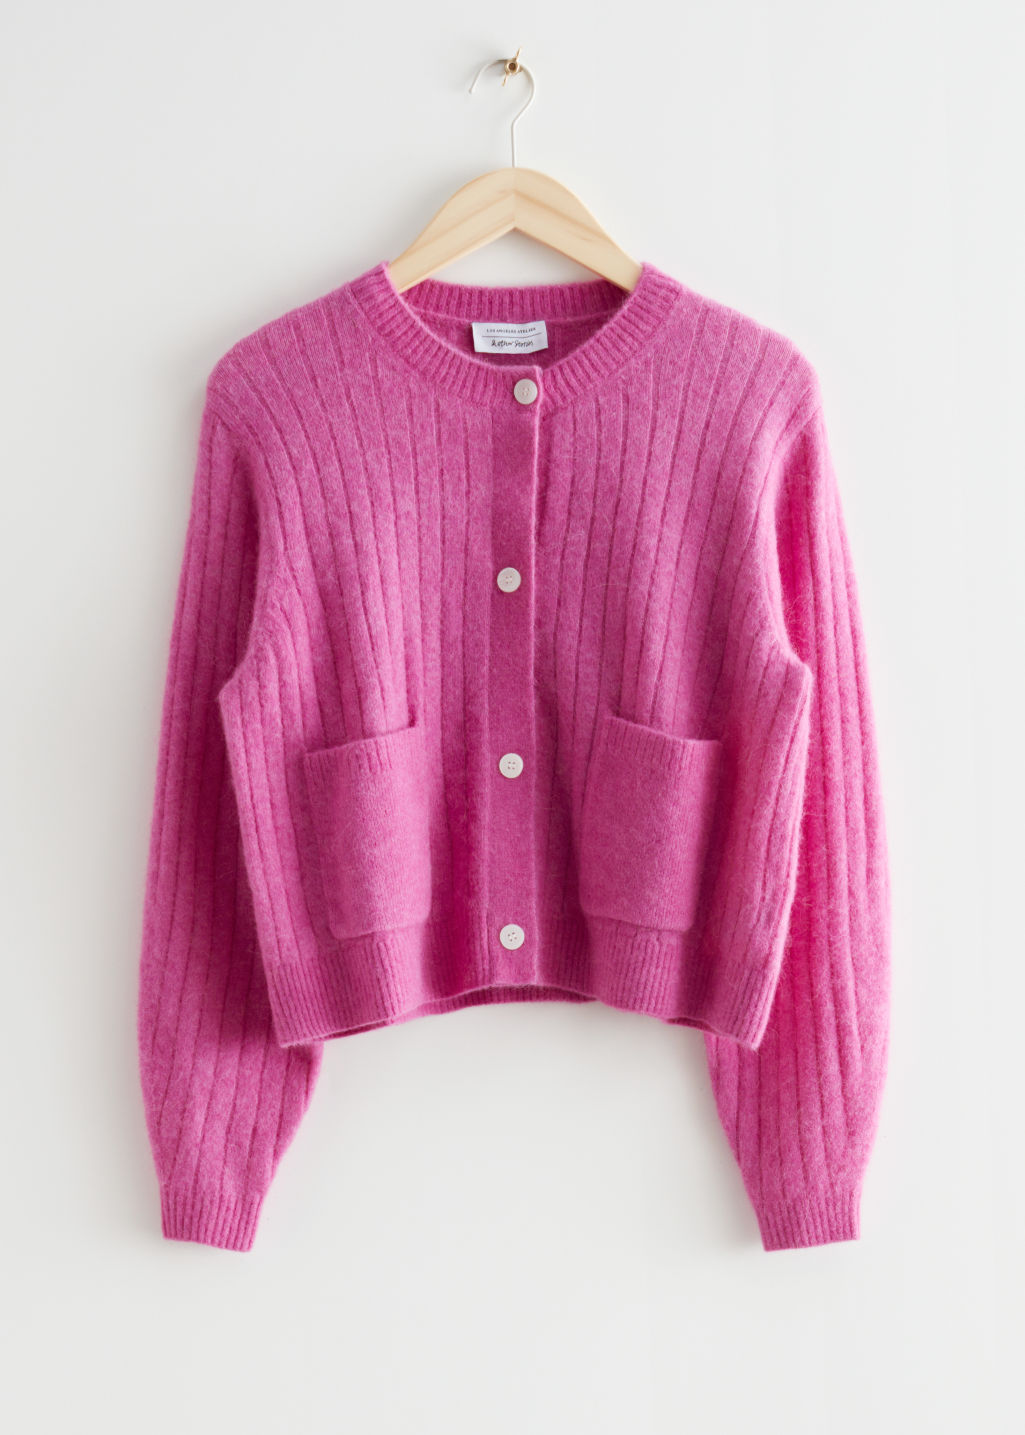 rozi džemper s gumbima